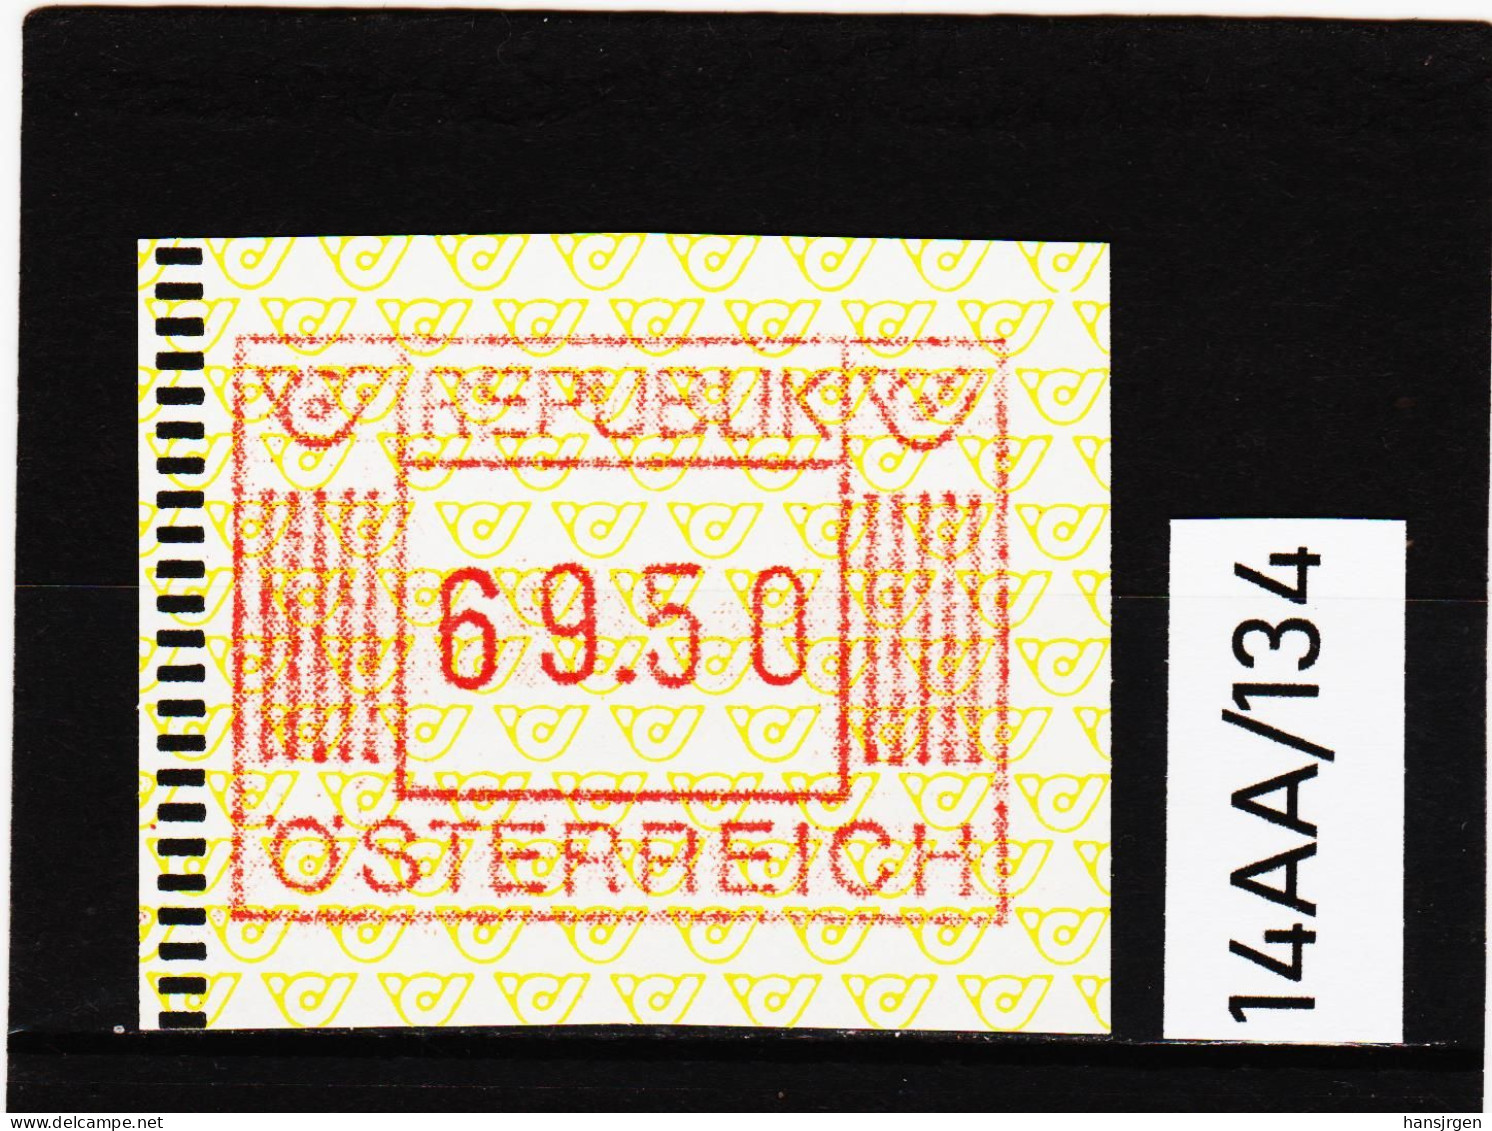 14AA/134  ÖSTERREICH 1983 AUTOMATENMARKEN  A N K  1. AUSGABE  69,50 SCHILLING   ** Postfrisch - Automatenmarken [ATM]